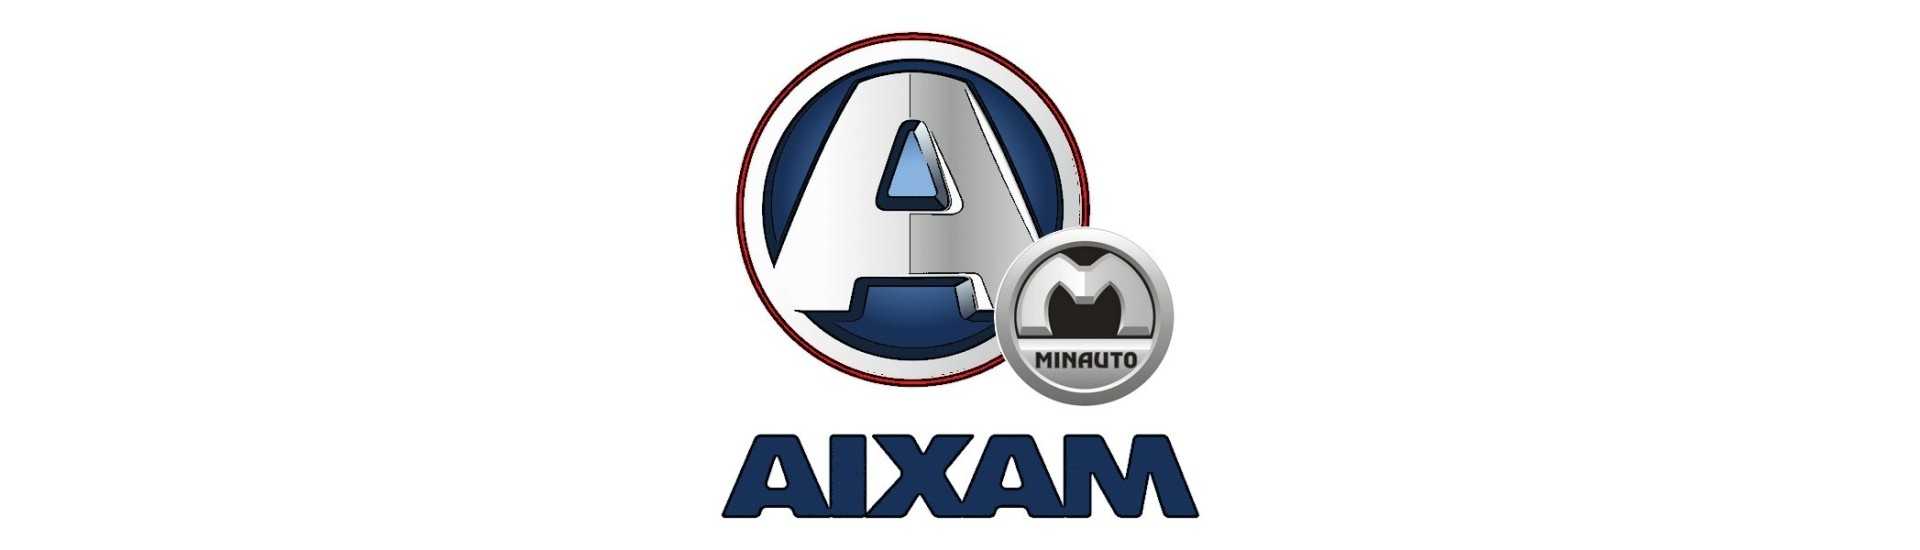 Feuer Tag zum besten Preis für Auto ohne Lizenz Aixam Minauto